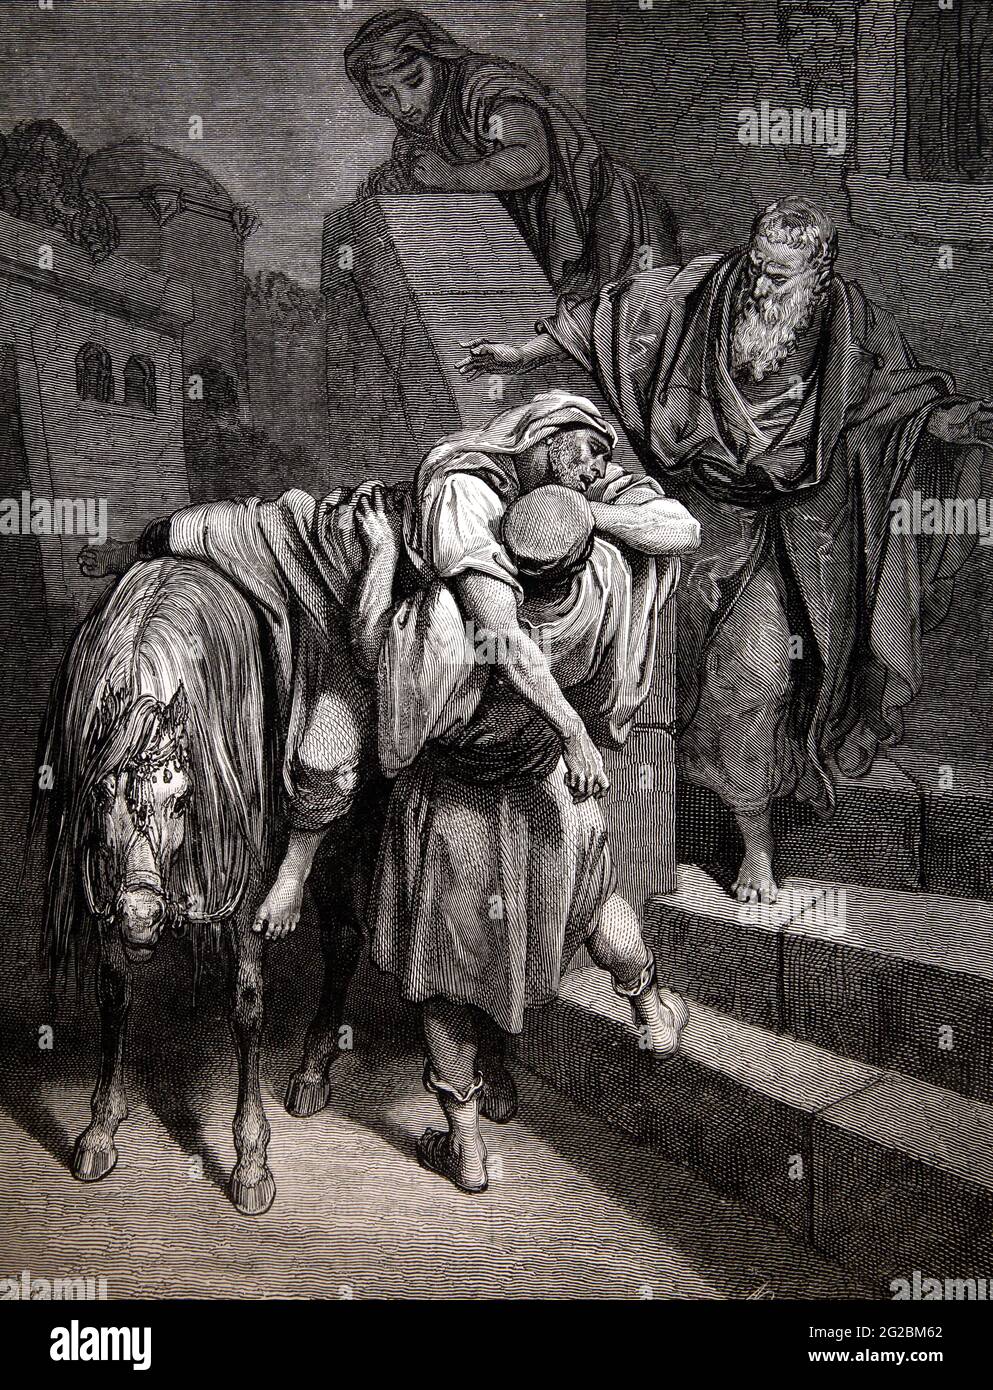 Histoire de la Bible Illustration de l'arrivée du bon Samaritain à l'auberge (Luc 10:34-35) par Gustave Dore Banque D'Images